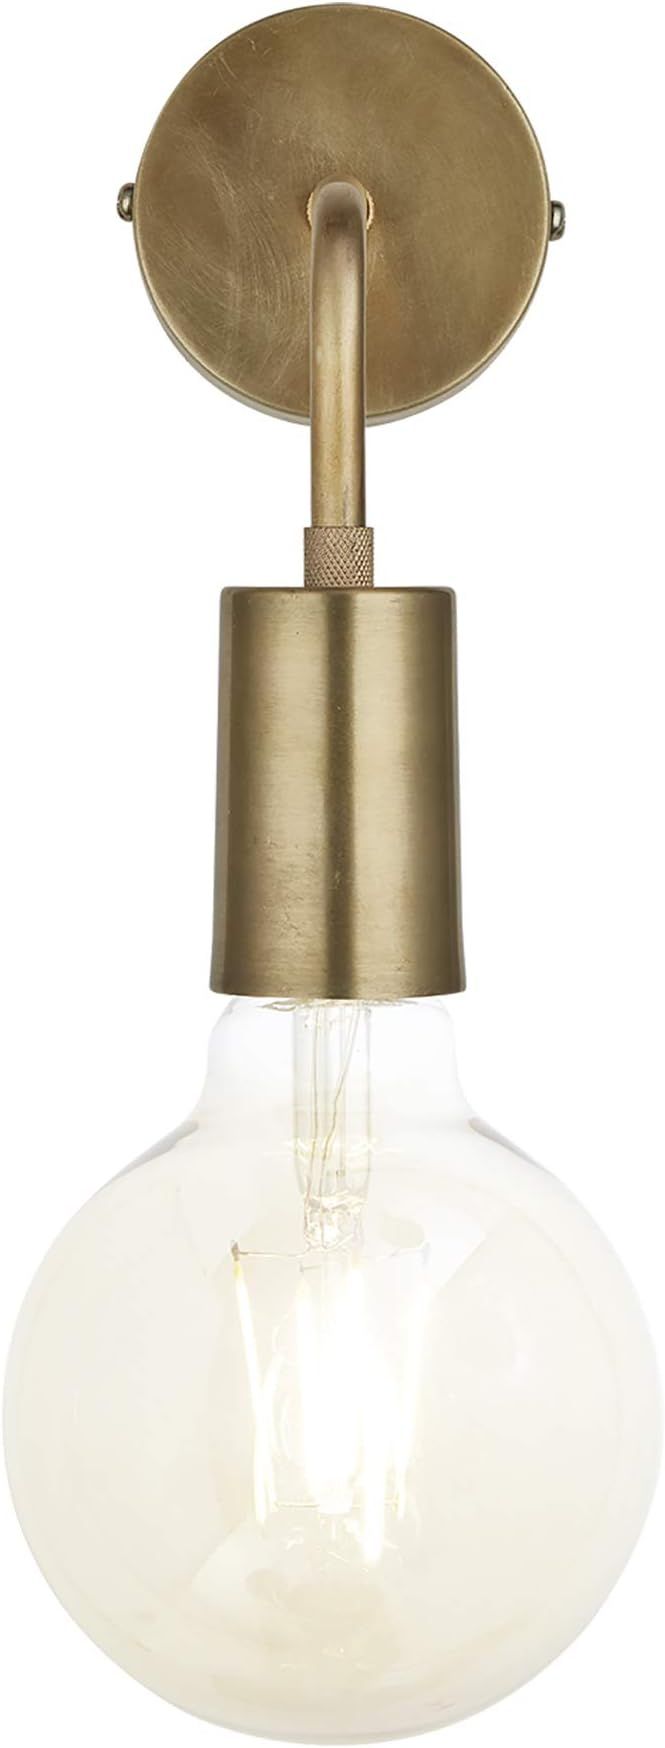 Industville - Sleek Edison - Wall Light Fixture - Brass Colour - Brass Material - 14 CM X 8 CM X... | Amazon (UK)